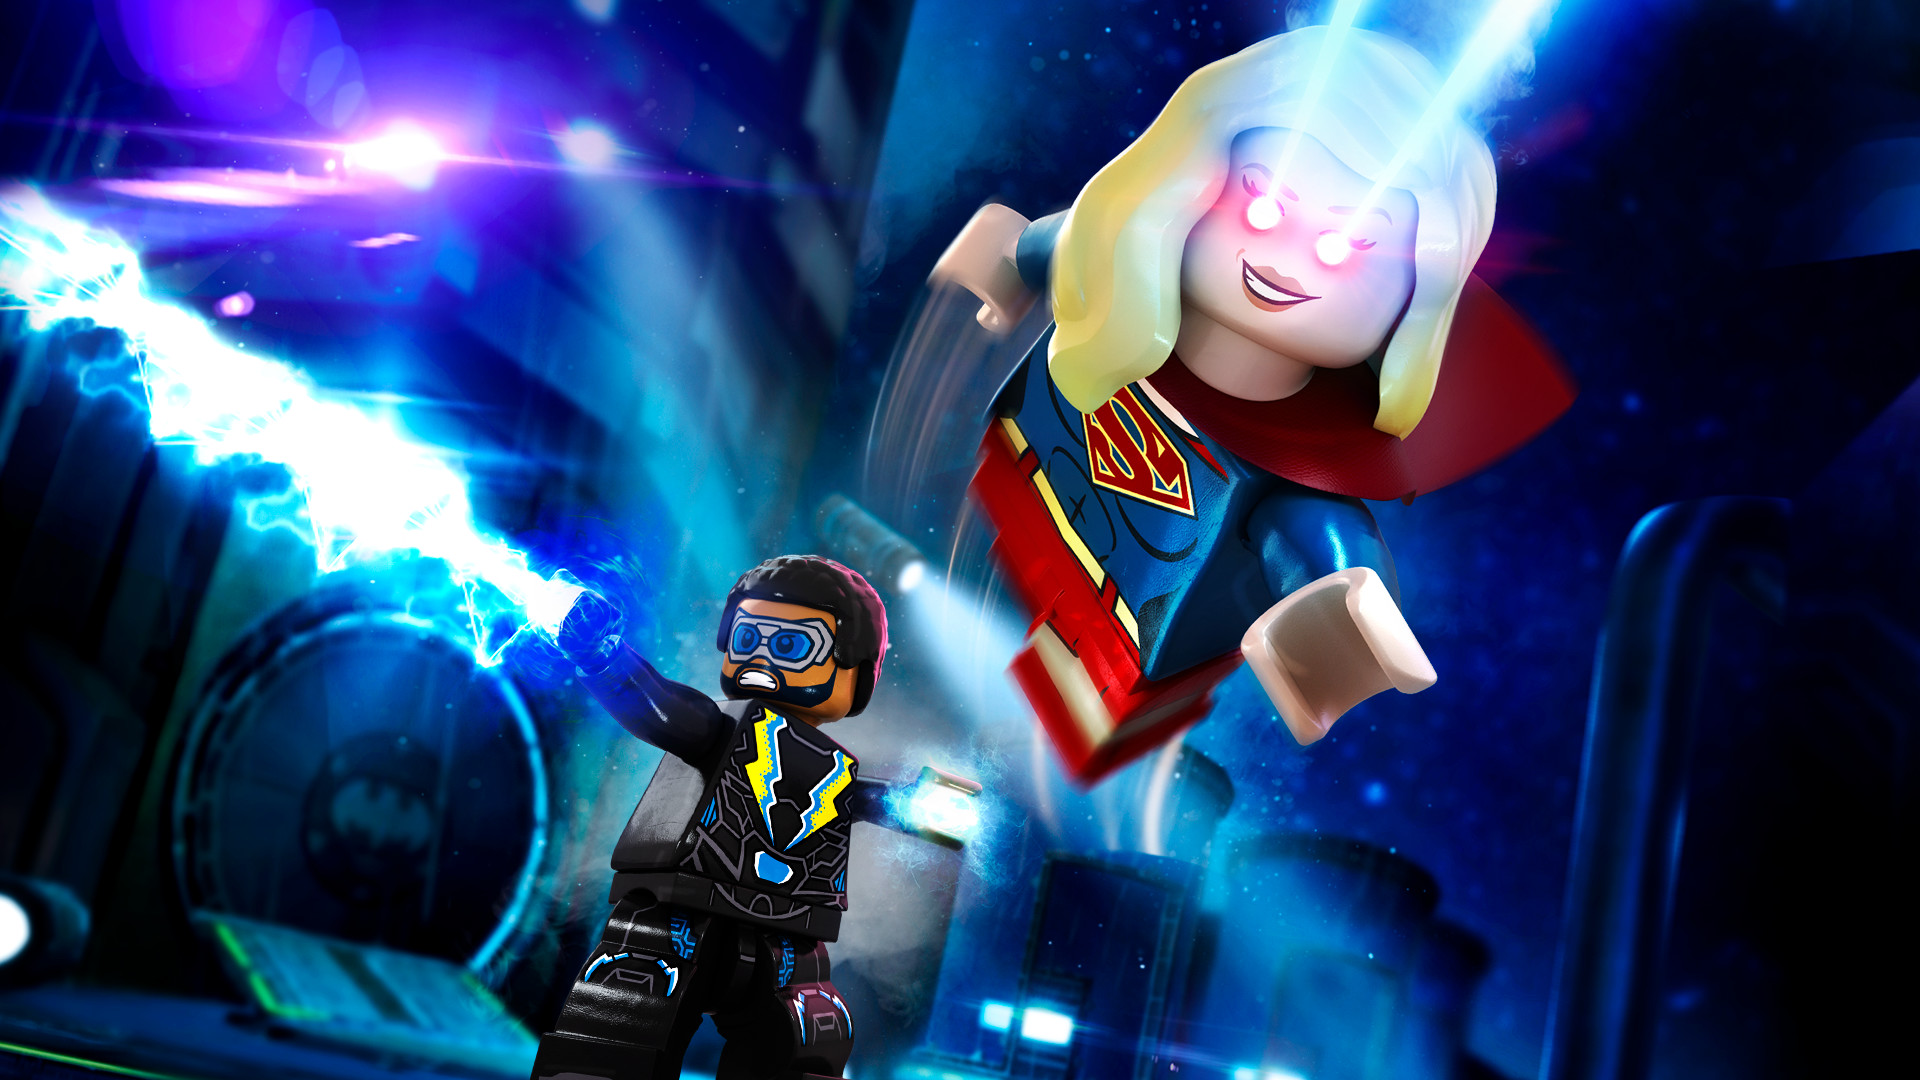 [$ 1.12] LEGO DC Super-Villains - DC TV Series Super Heroes Character Pack DLC EU PS4 CD Key